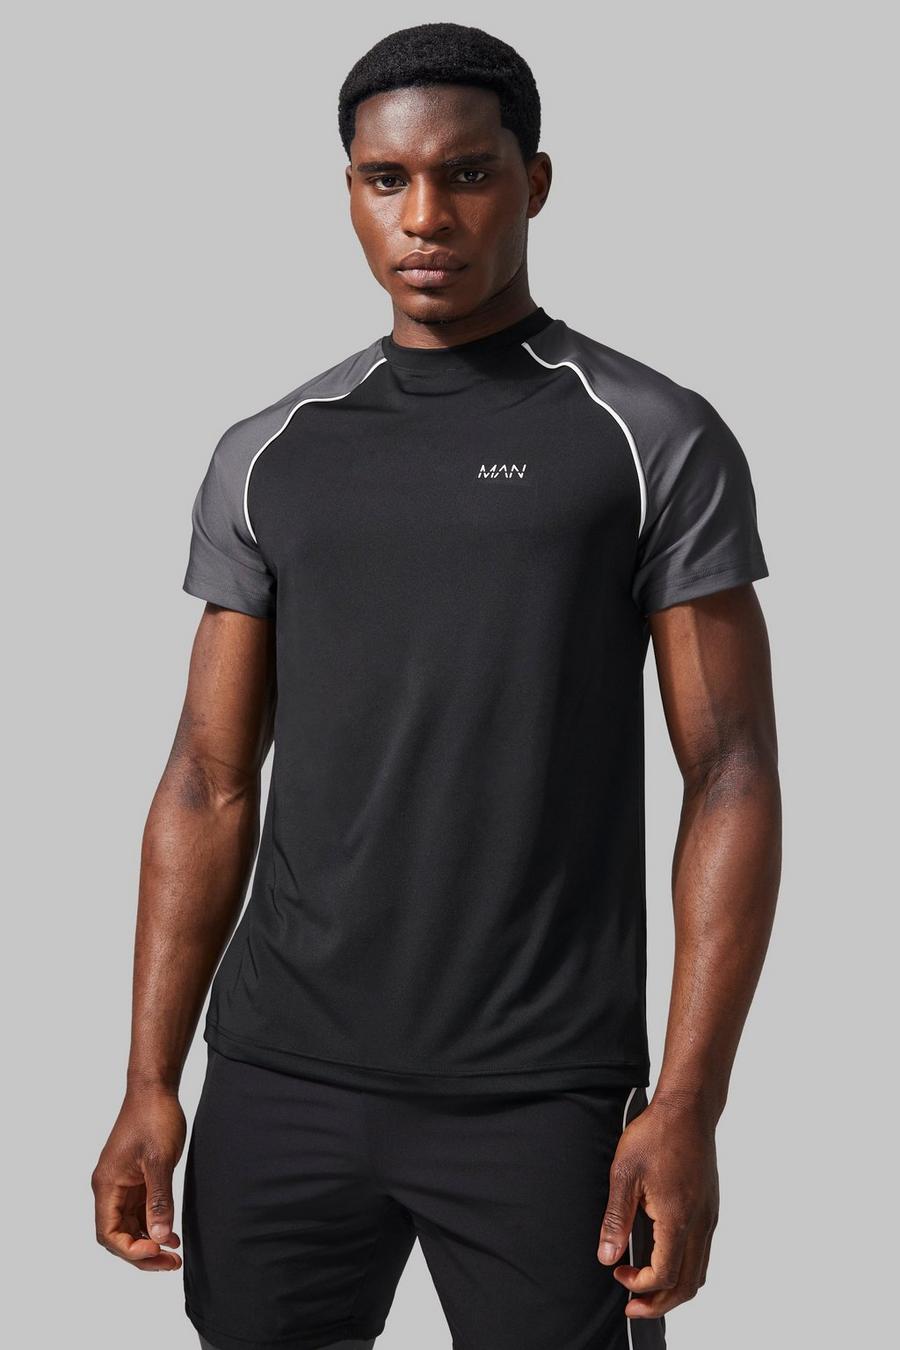 Camiseta MAN Active resistente con colores en bloque, Black nero